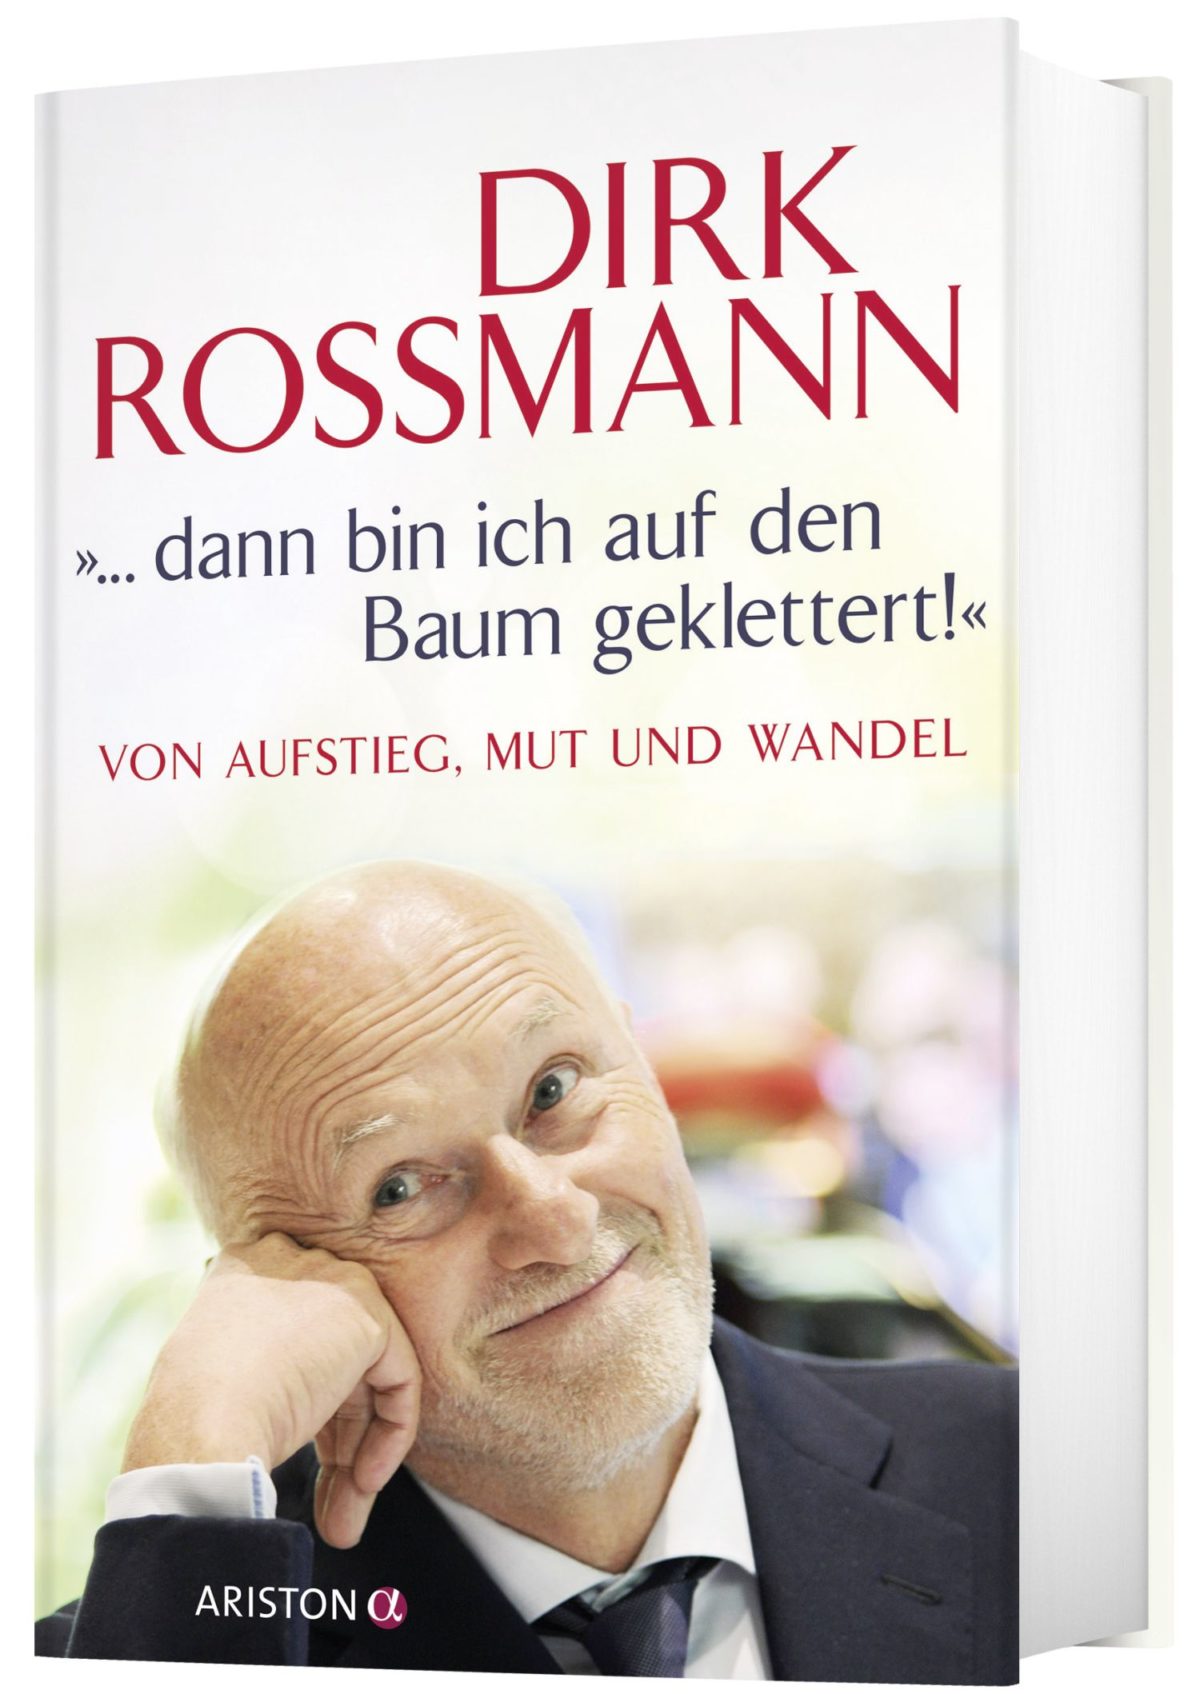 Dirk Roßmann spendet 30.000 Euro